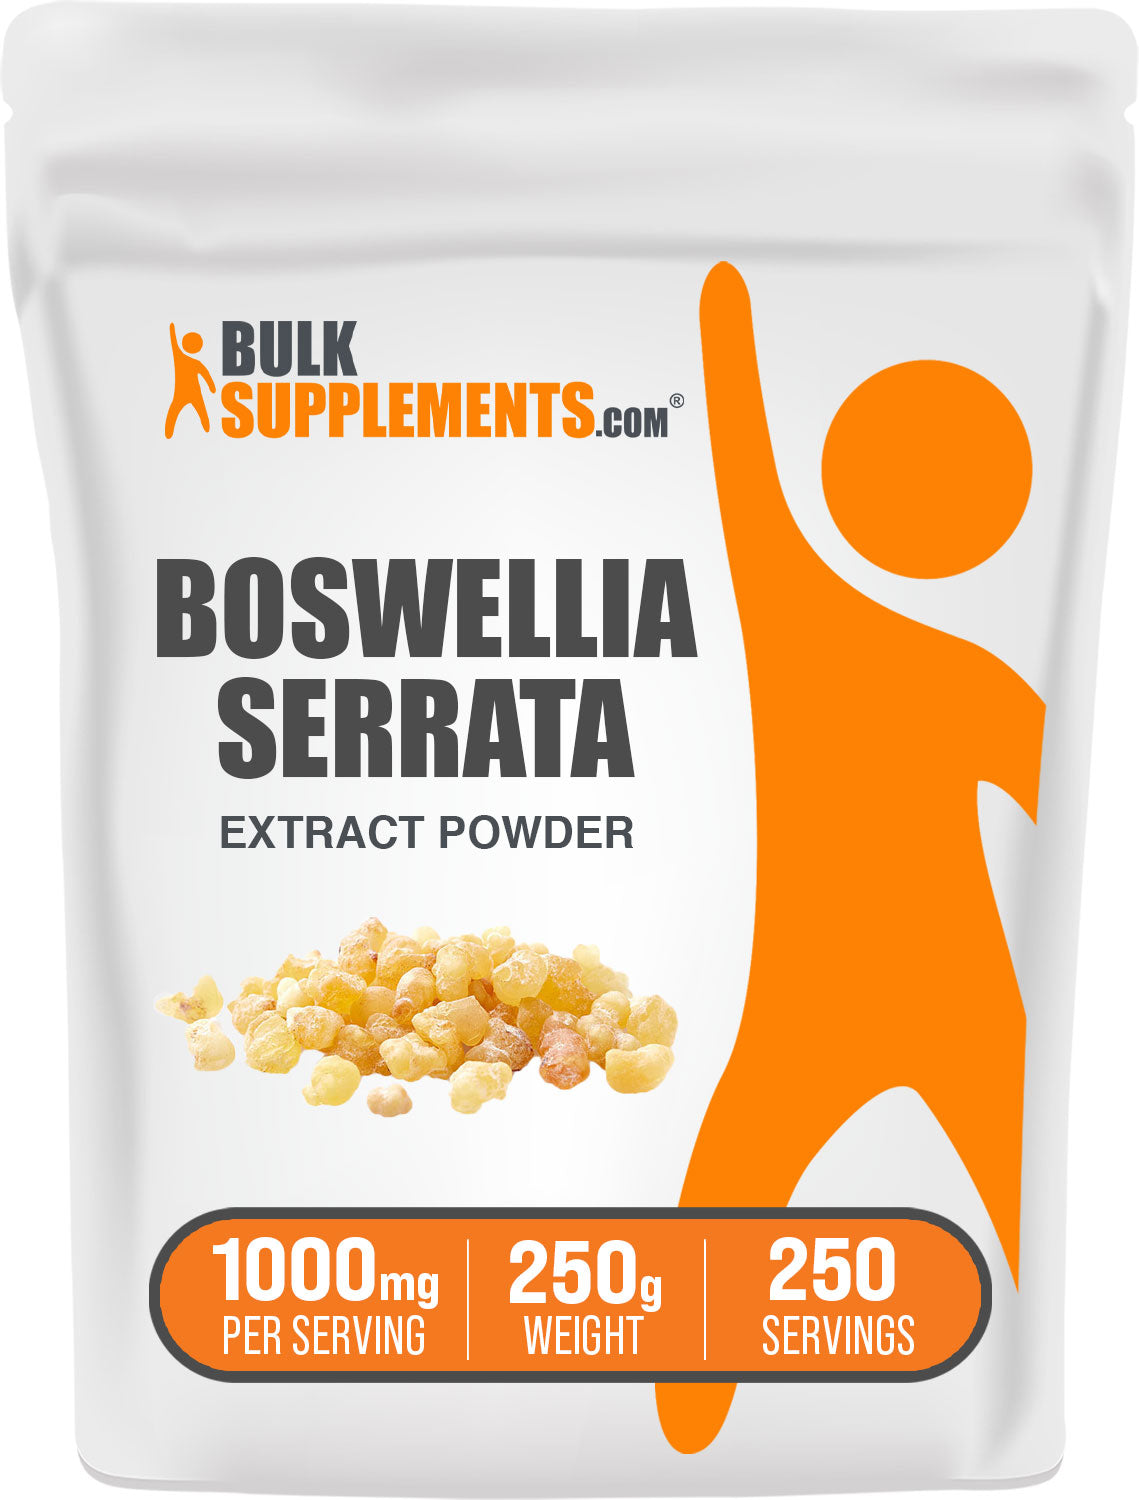 250g of boswellia serrata